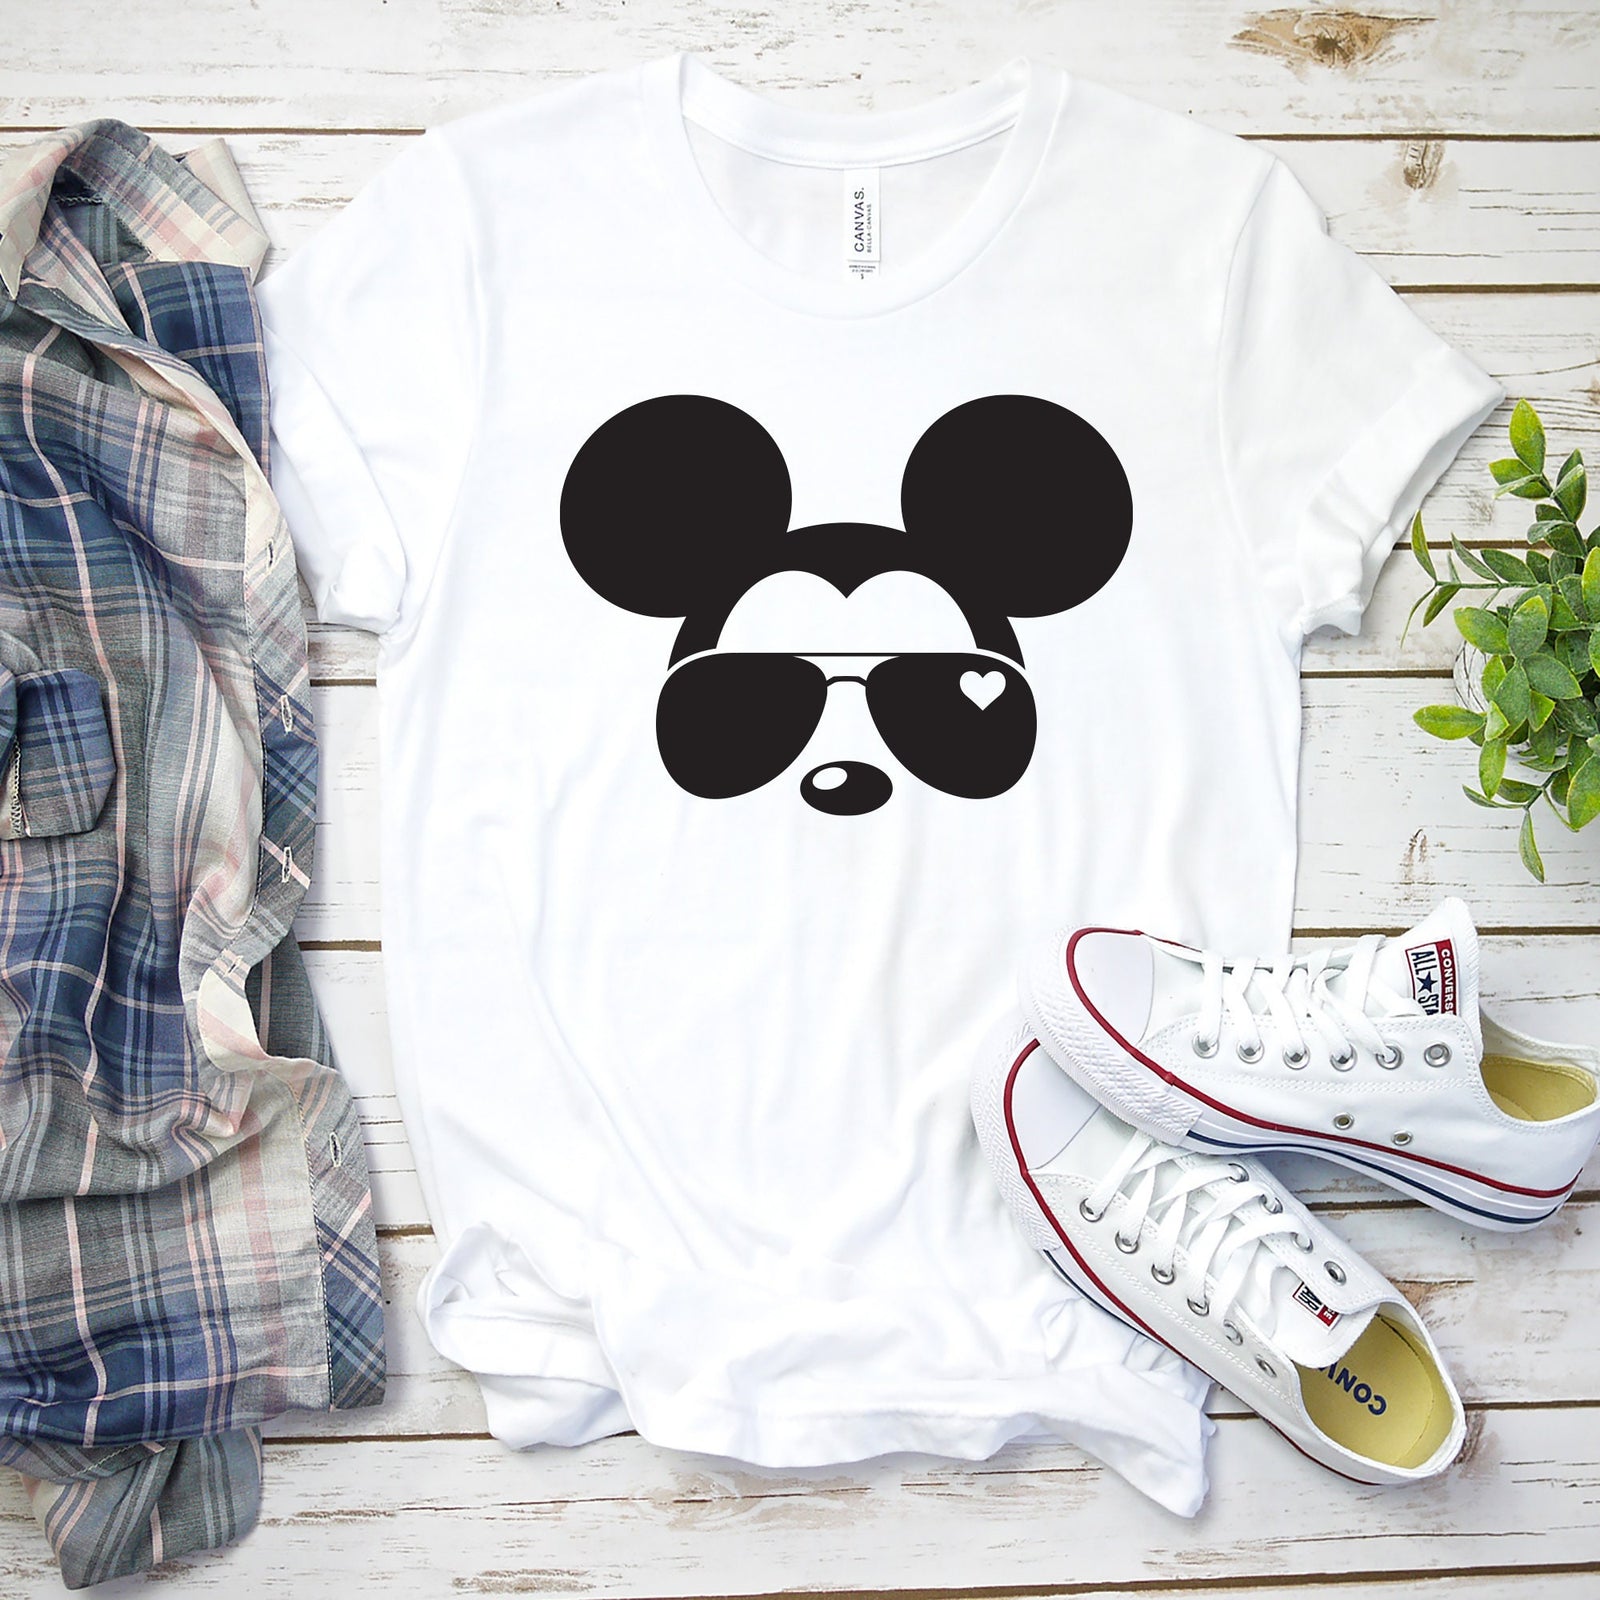 Mickey Aviator t shirt - Disney Trip Matching Shirts - Mickey Mouse T Shirt - Mickey Sunglasses